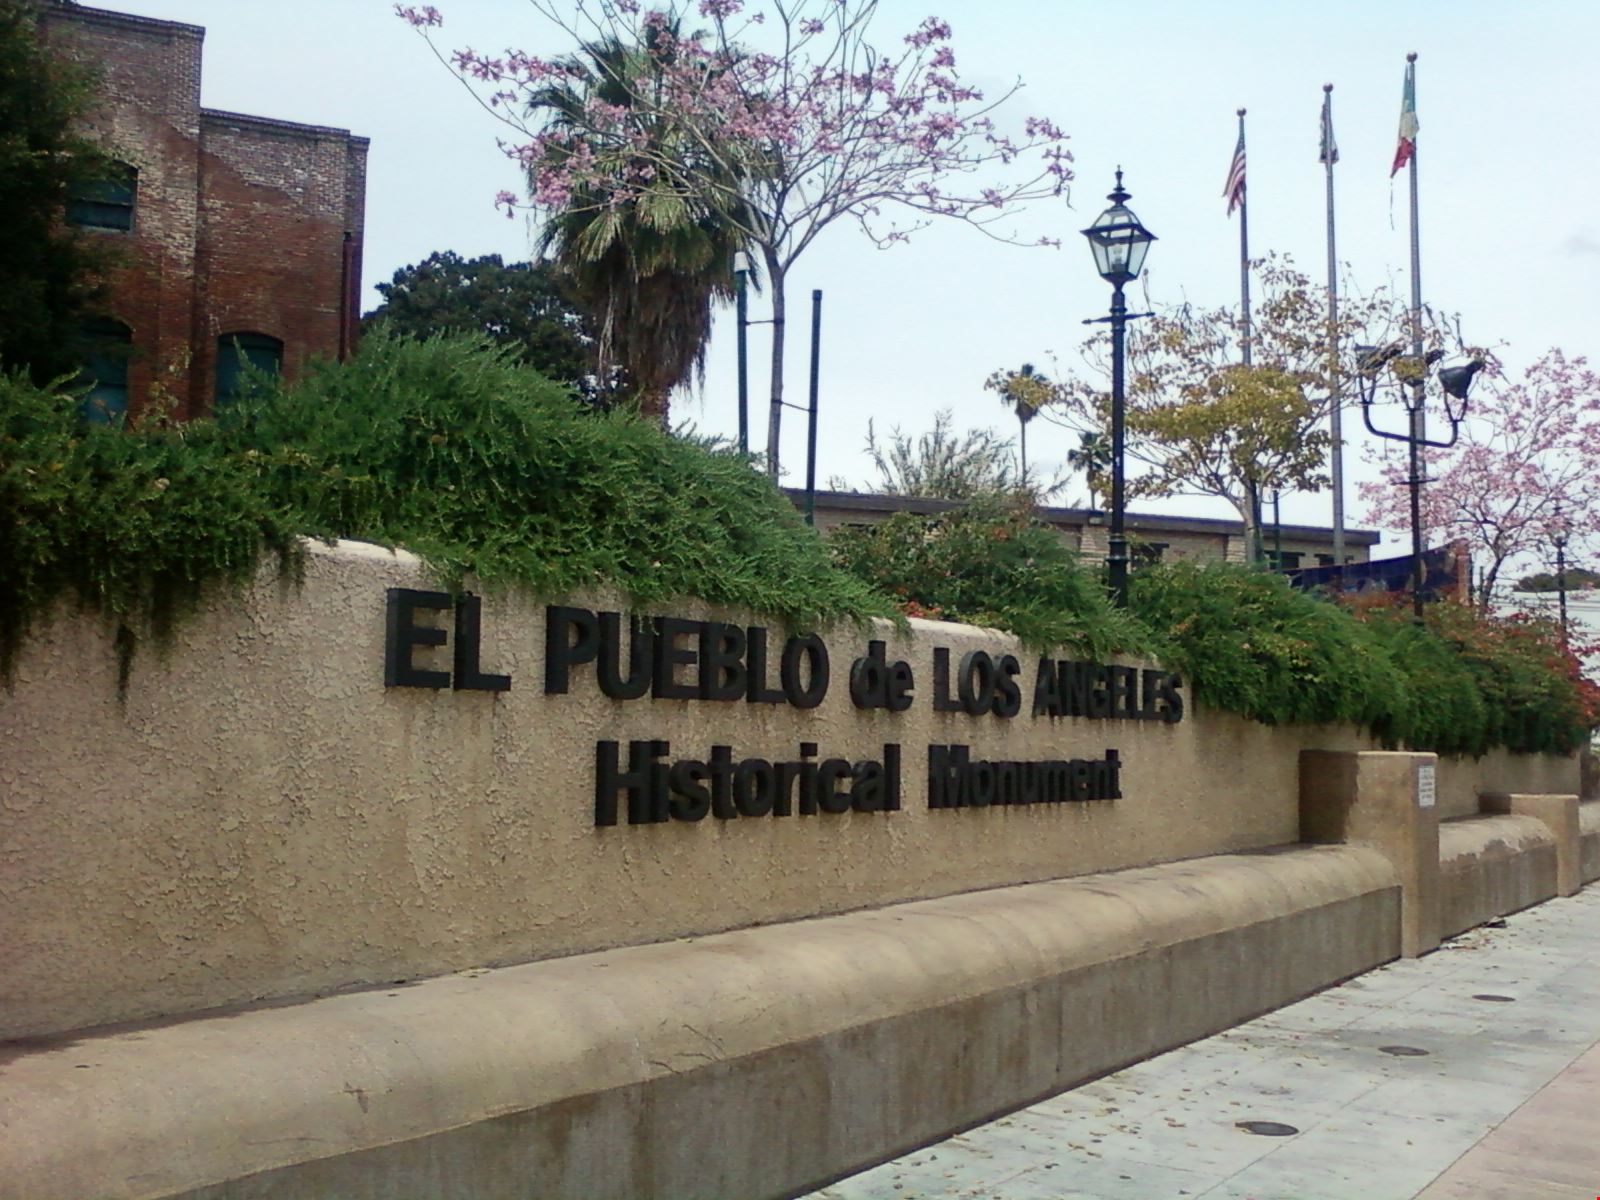 El Pueblo LA | Explore | Metrolink